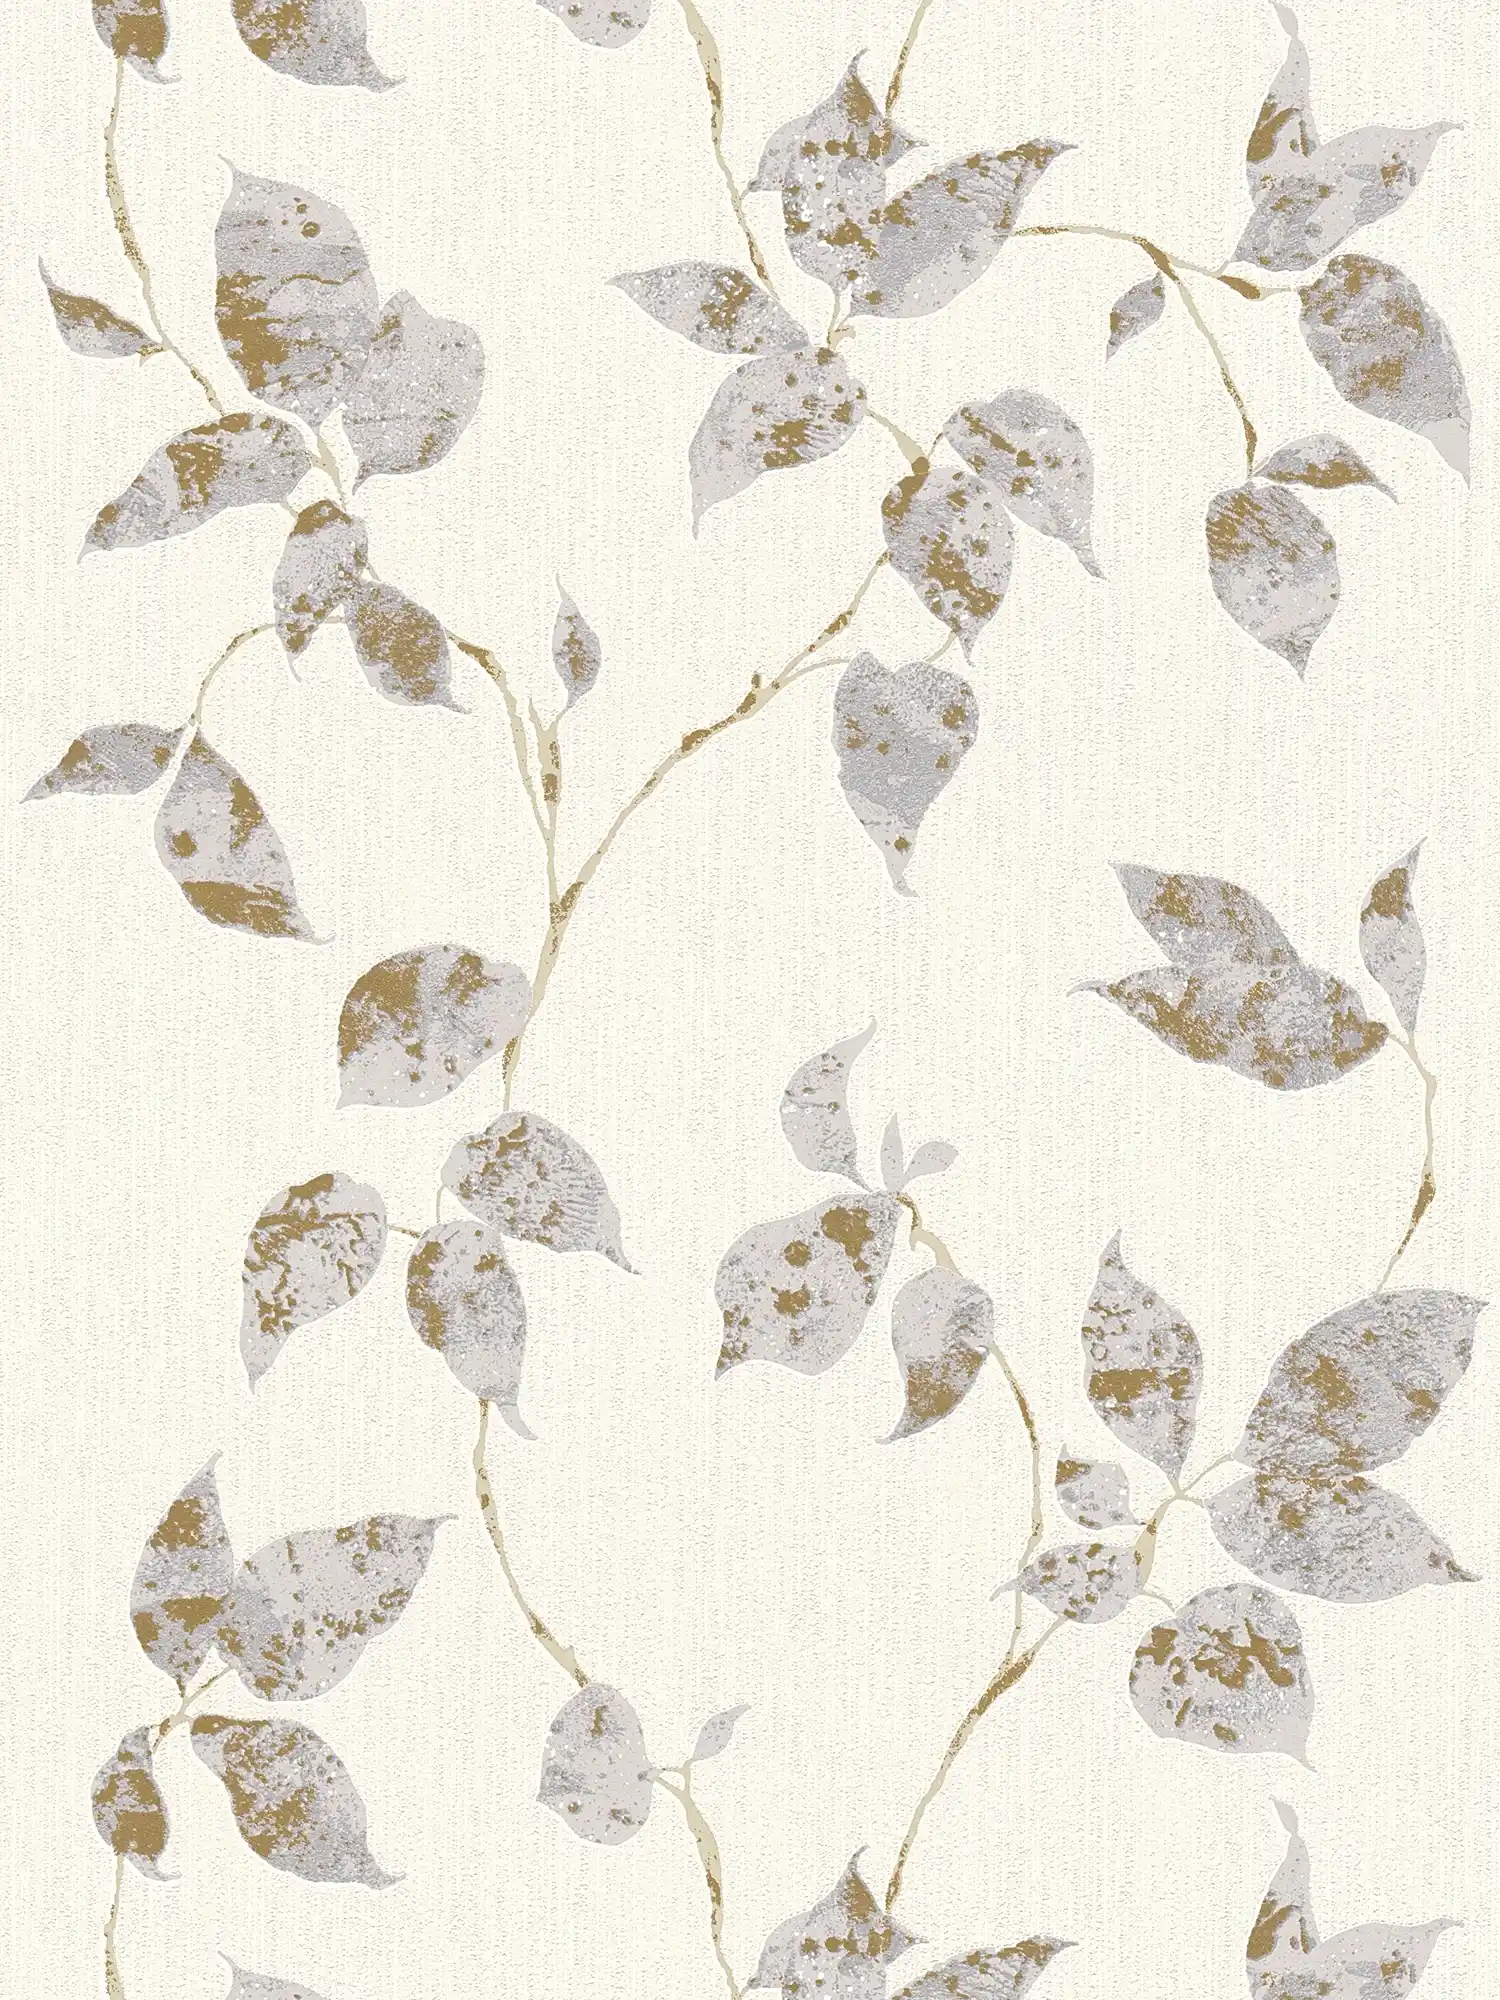 Textuurbehang met bladranken en metallic accenten - Grijs, Wit
